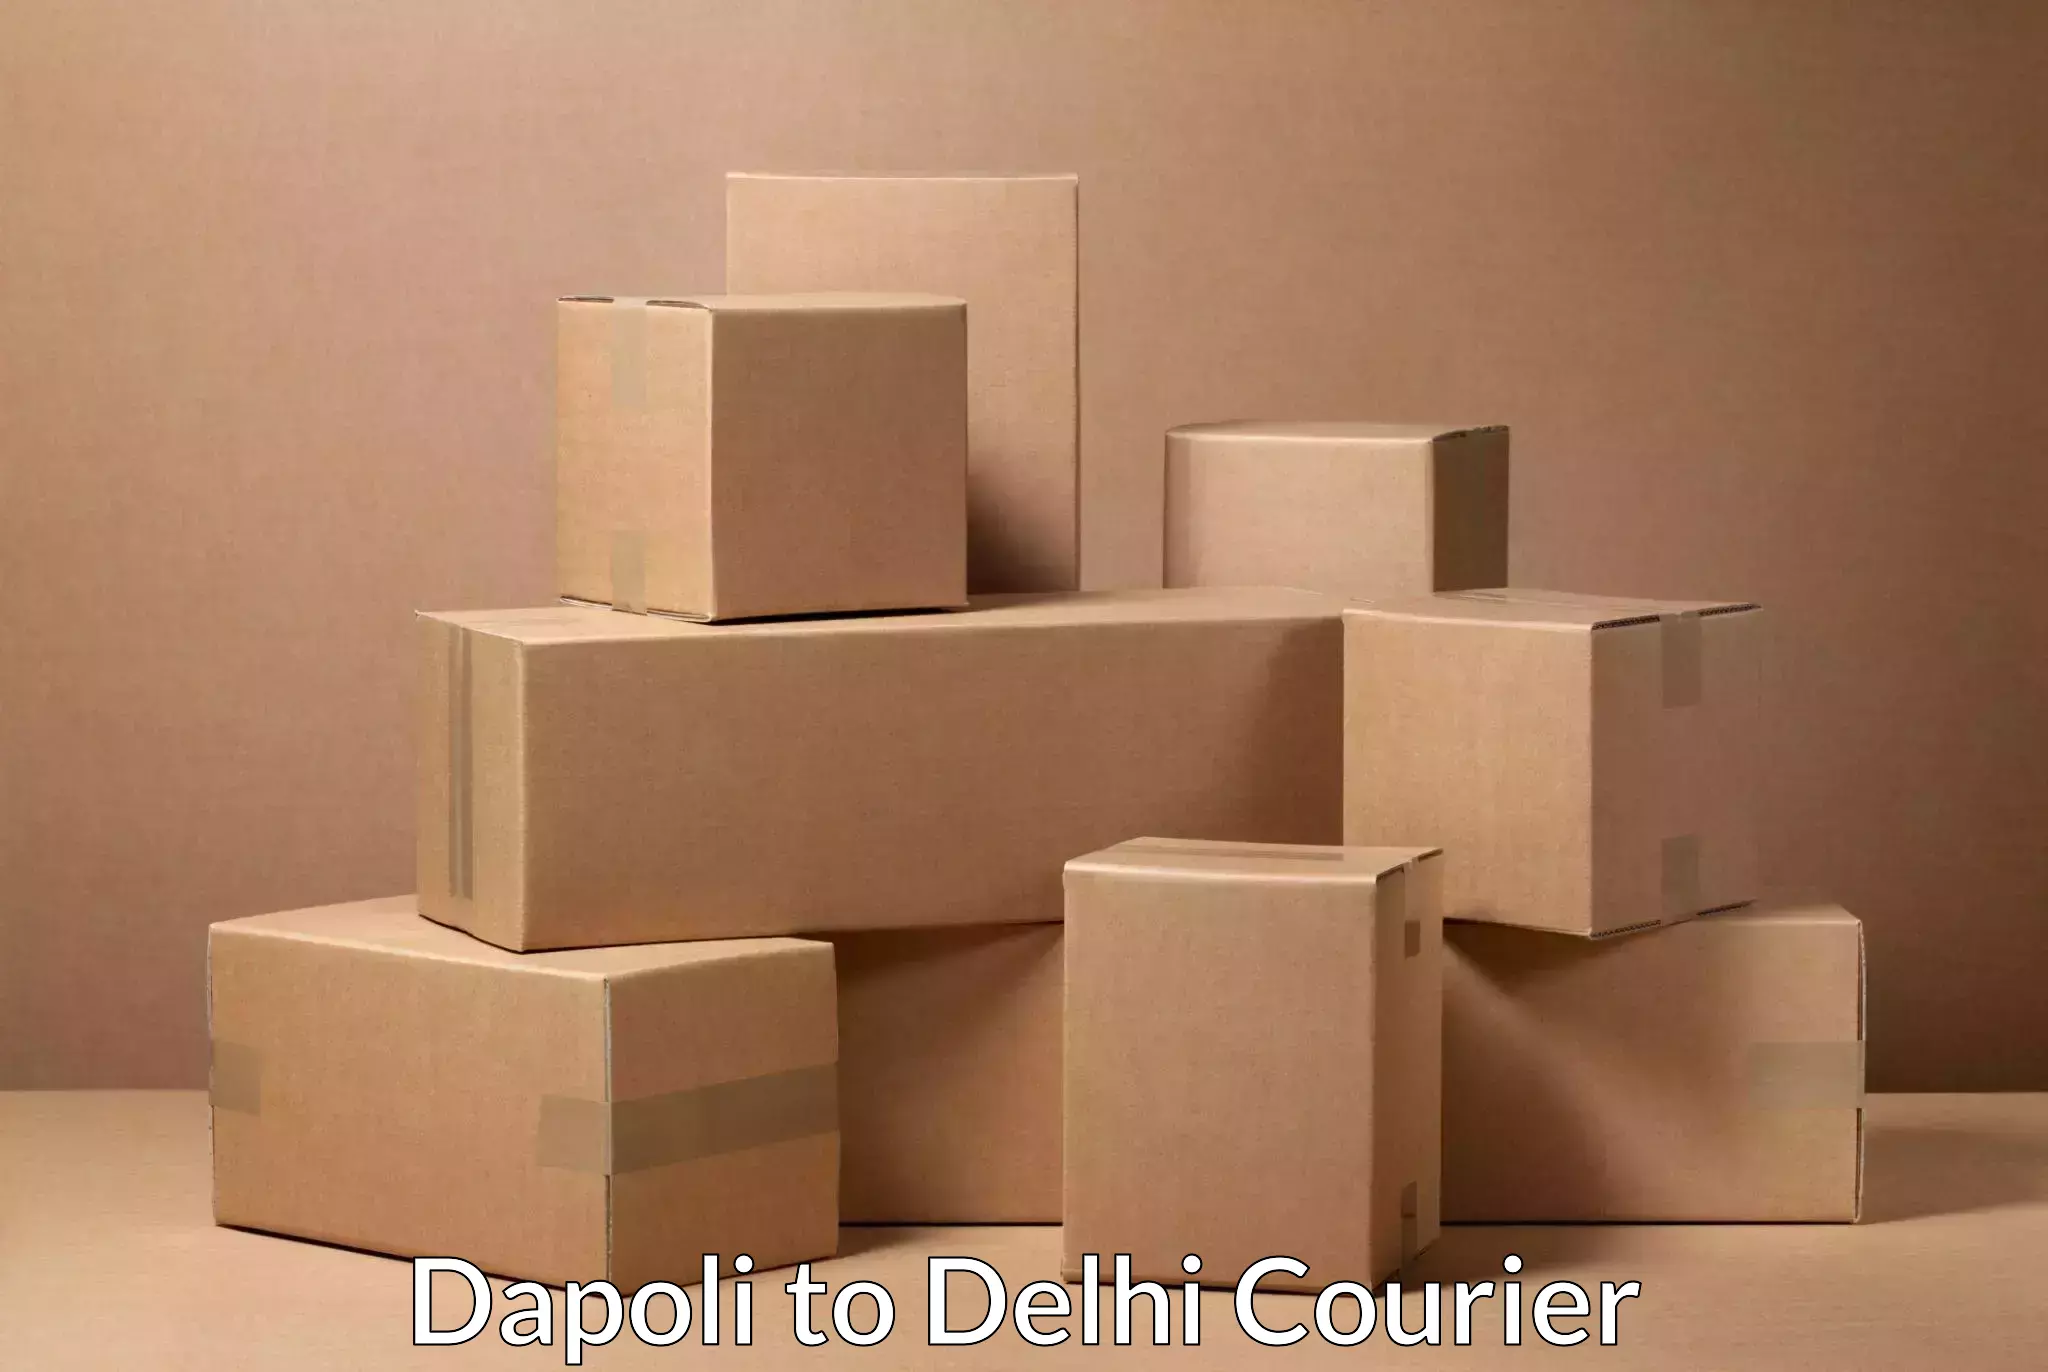 Overnight delivery services Dapoli to Delhi